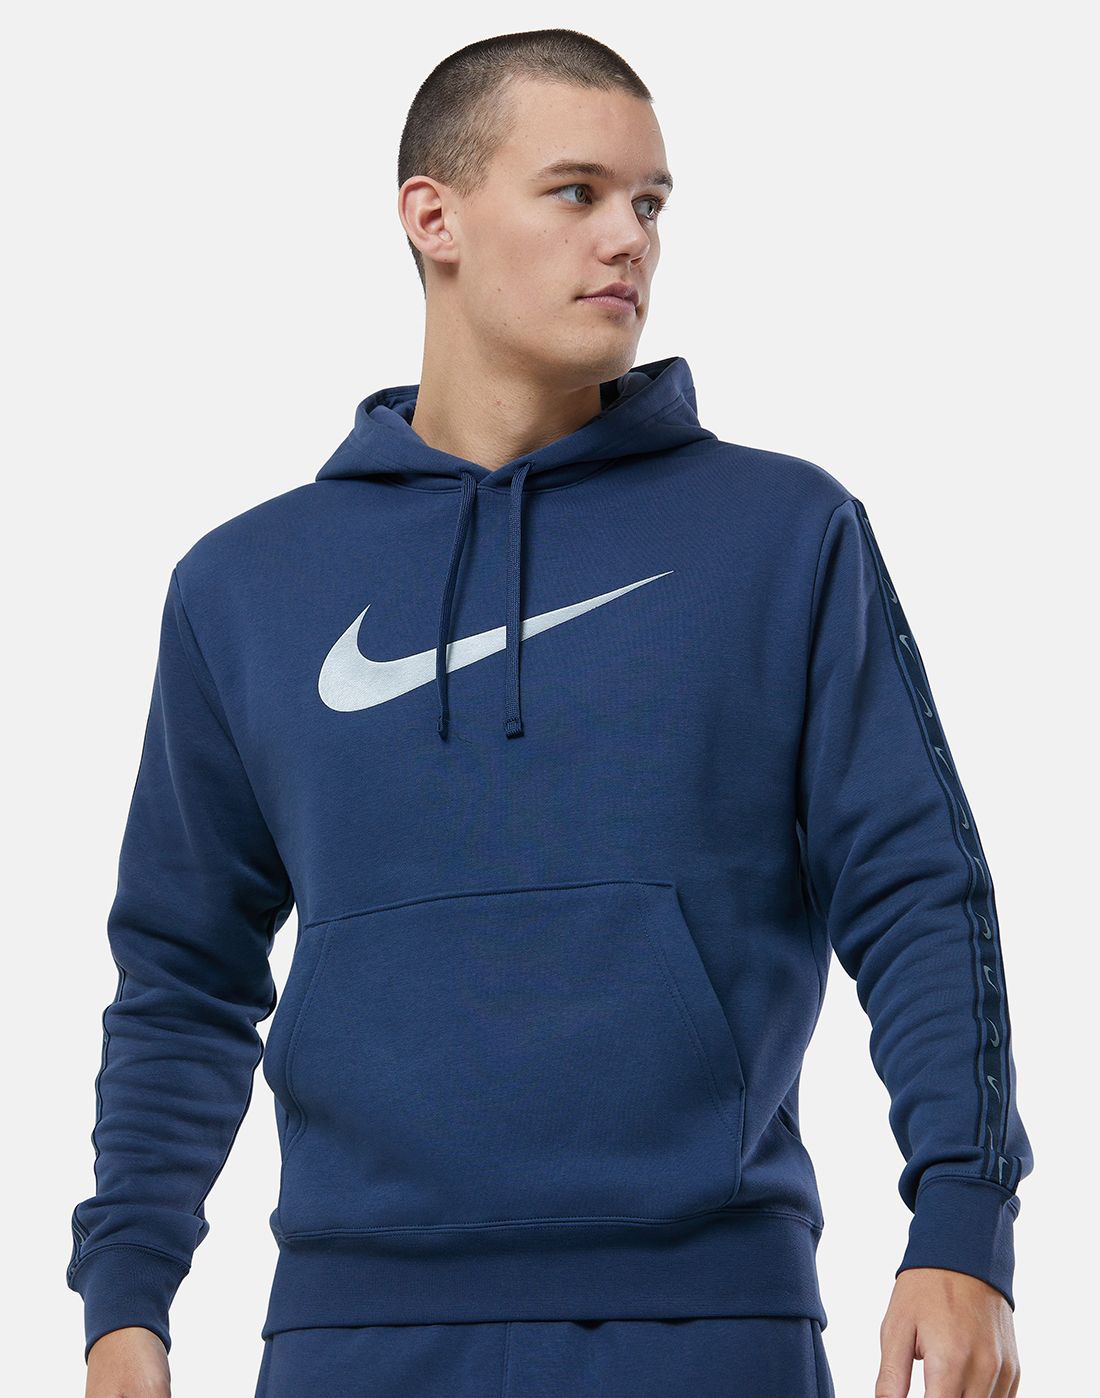 Nike Mens Repeat Fleece Hoodie - Navy | Life Style Sports IE